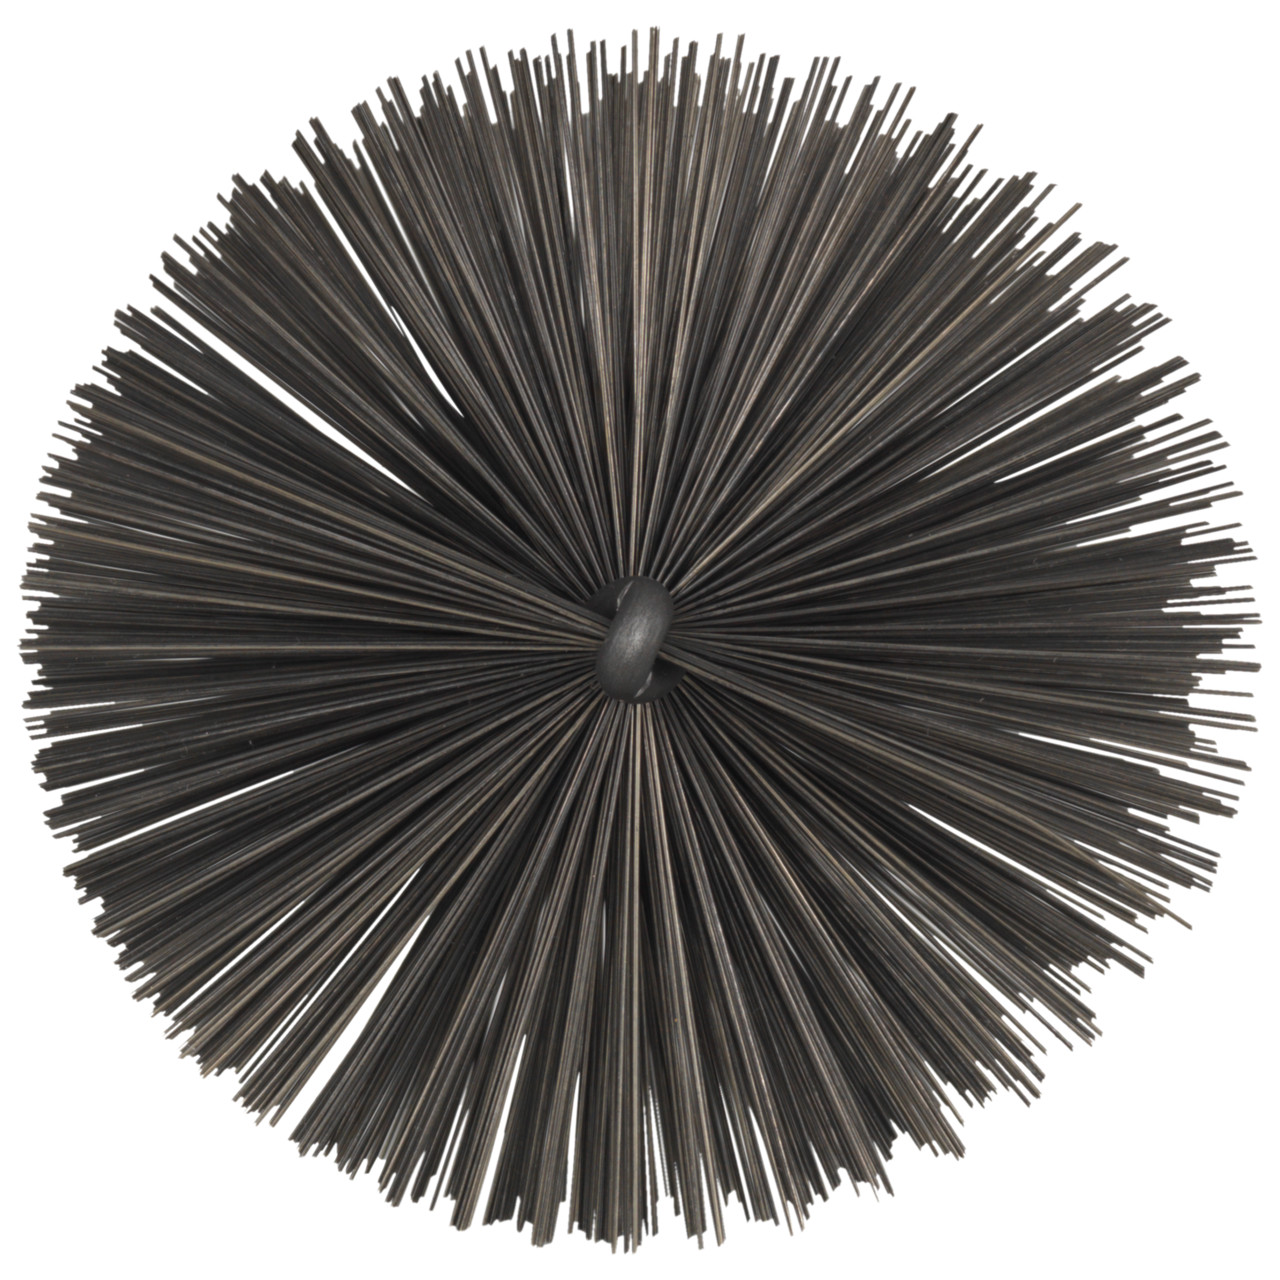 Tyrolit Brosse tubulaire avec filetage extérieur DxGE-I 44xW1/2-160 Pour l'acier, forme : 18ROGDG - (brosse tubulaire), art. 34203604